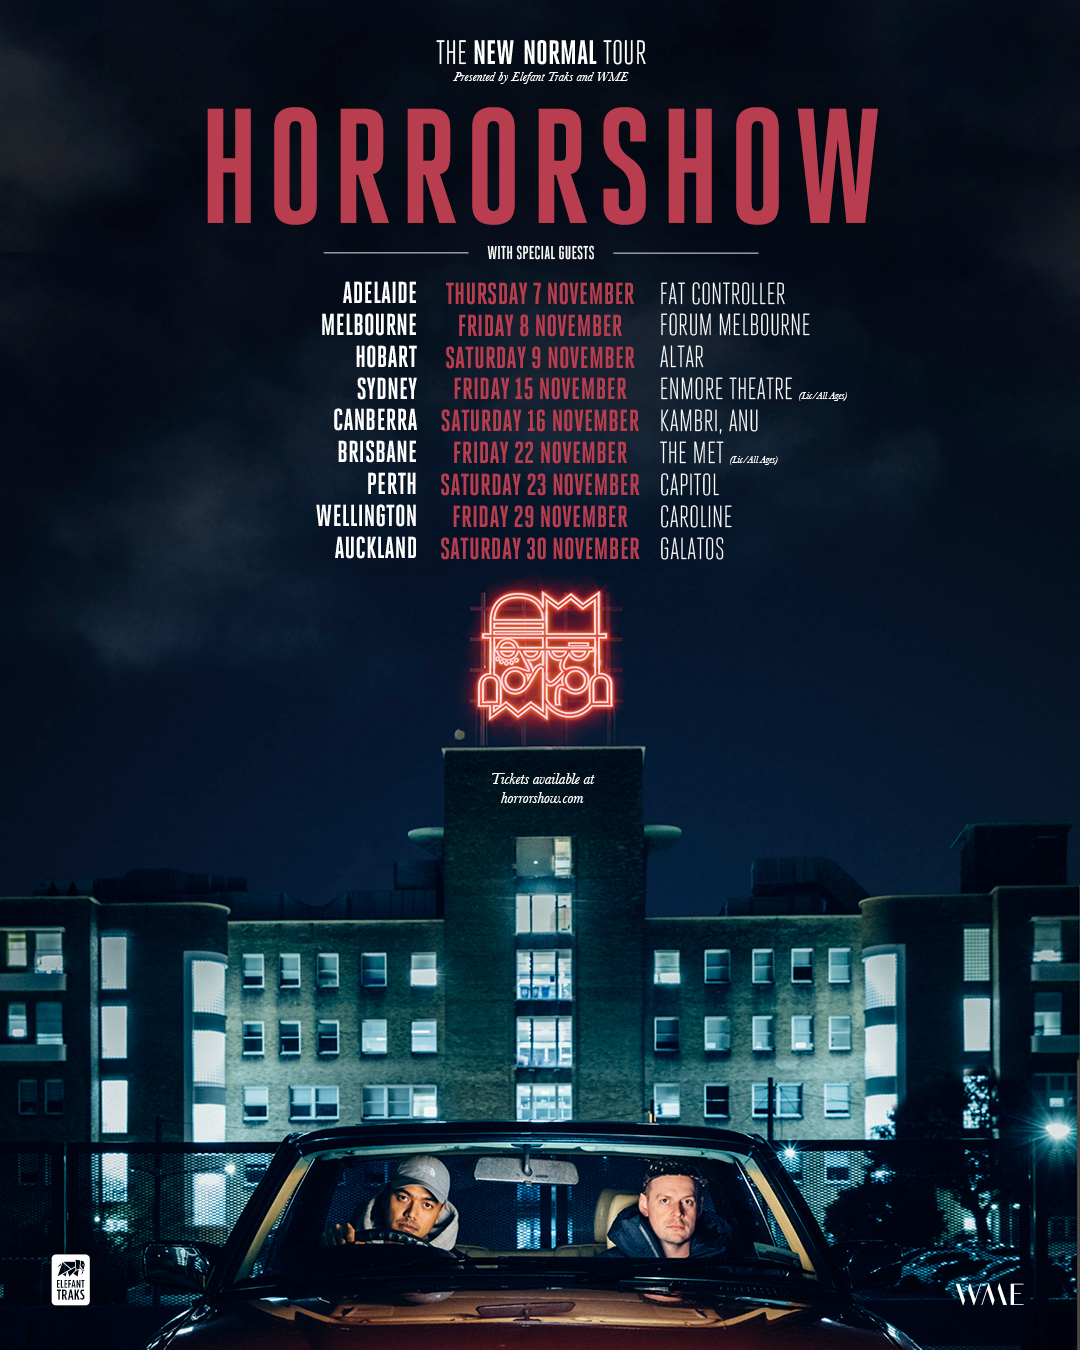 horrorshow tour